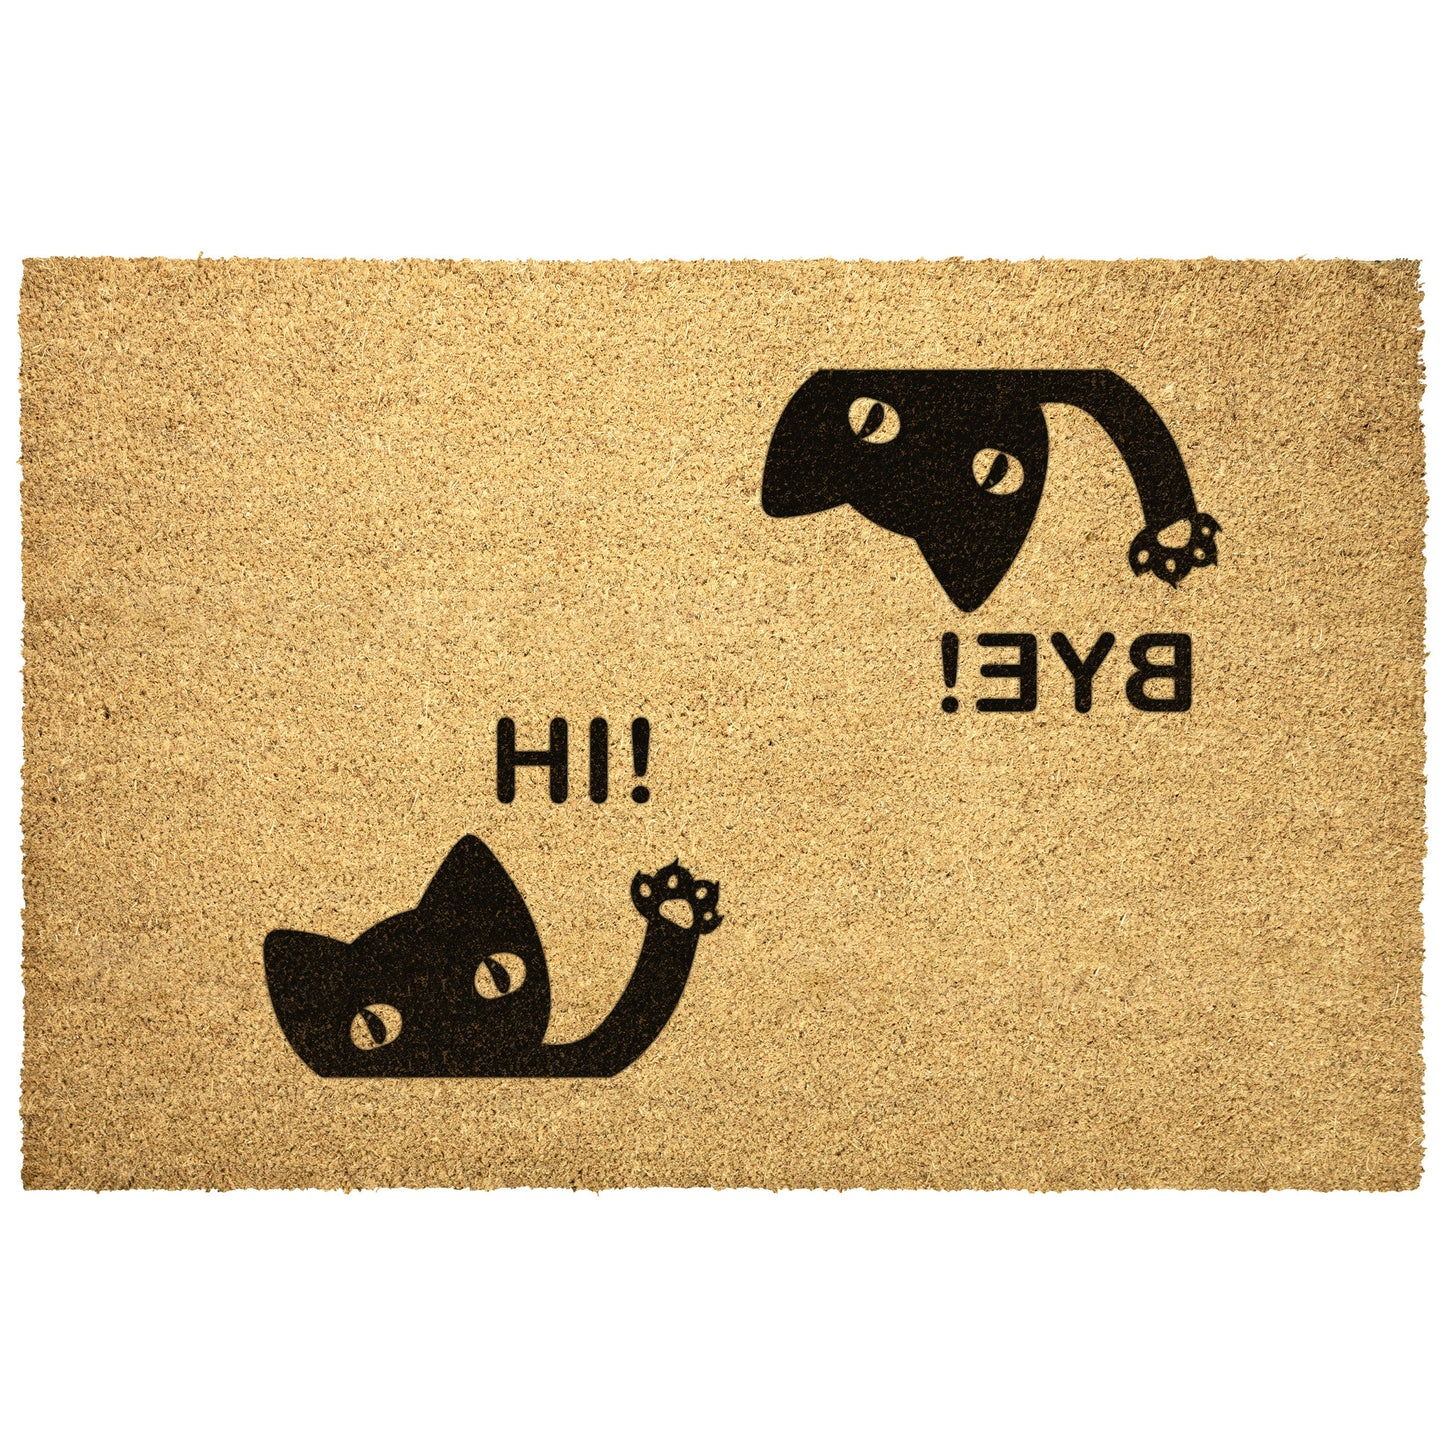 Hi Bye Cat Doormat, Housewarming Gift, Welcome Door Mat, Personalized Custom Doormat, New Home Gift, Wedding Gift, Personalized Gift